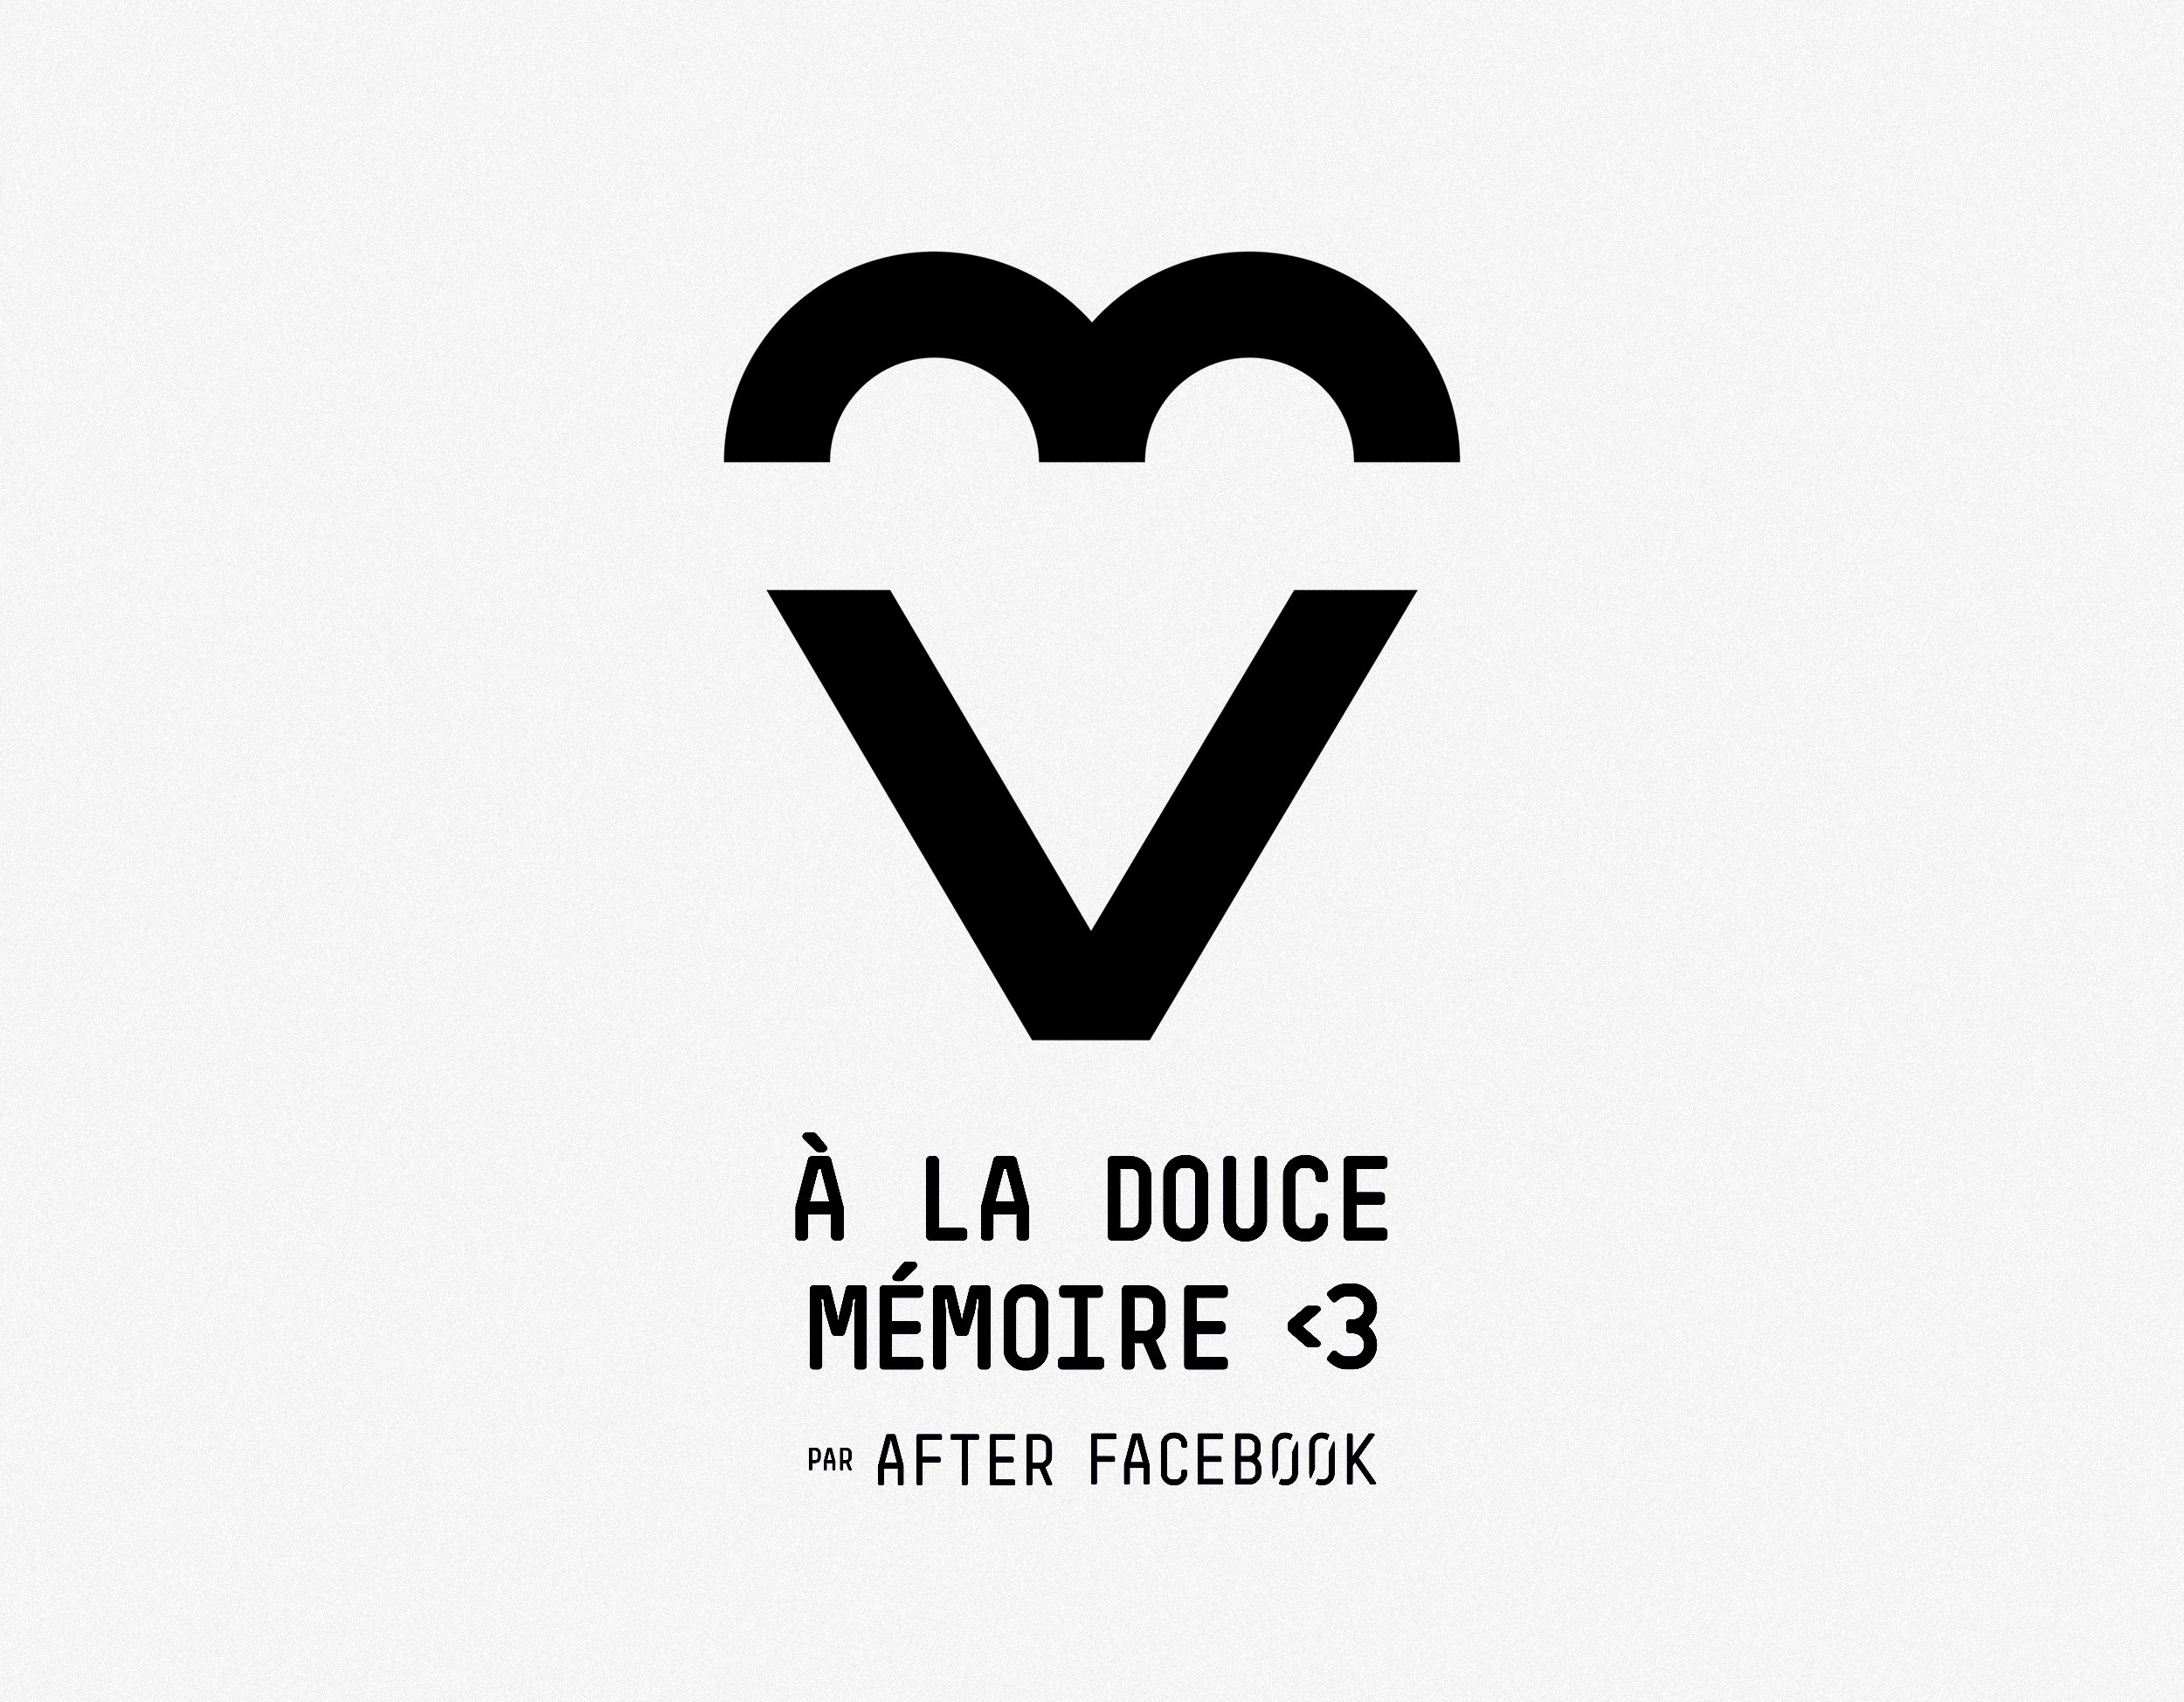 After-facebook_logo2